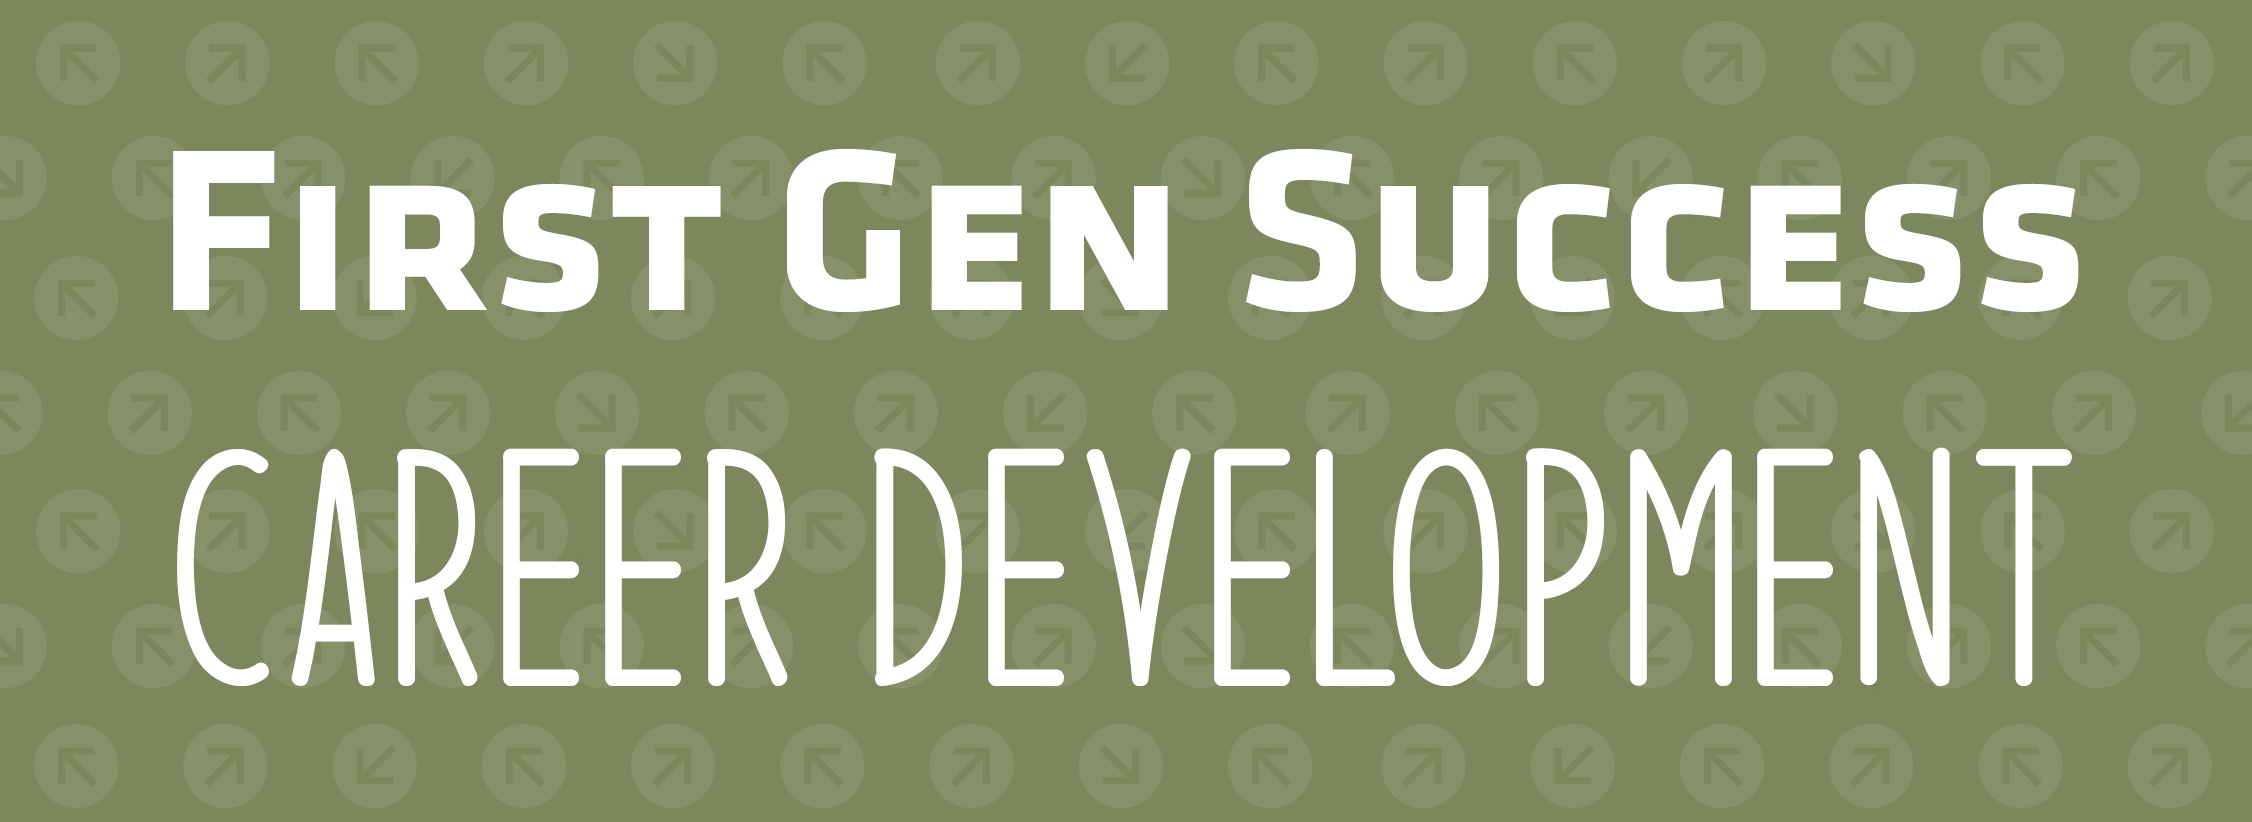 First Gen Success | Career Development